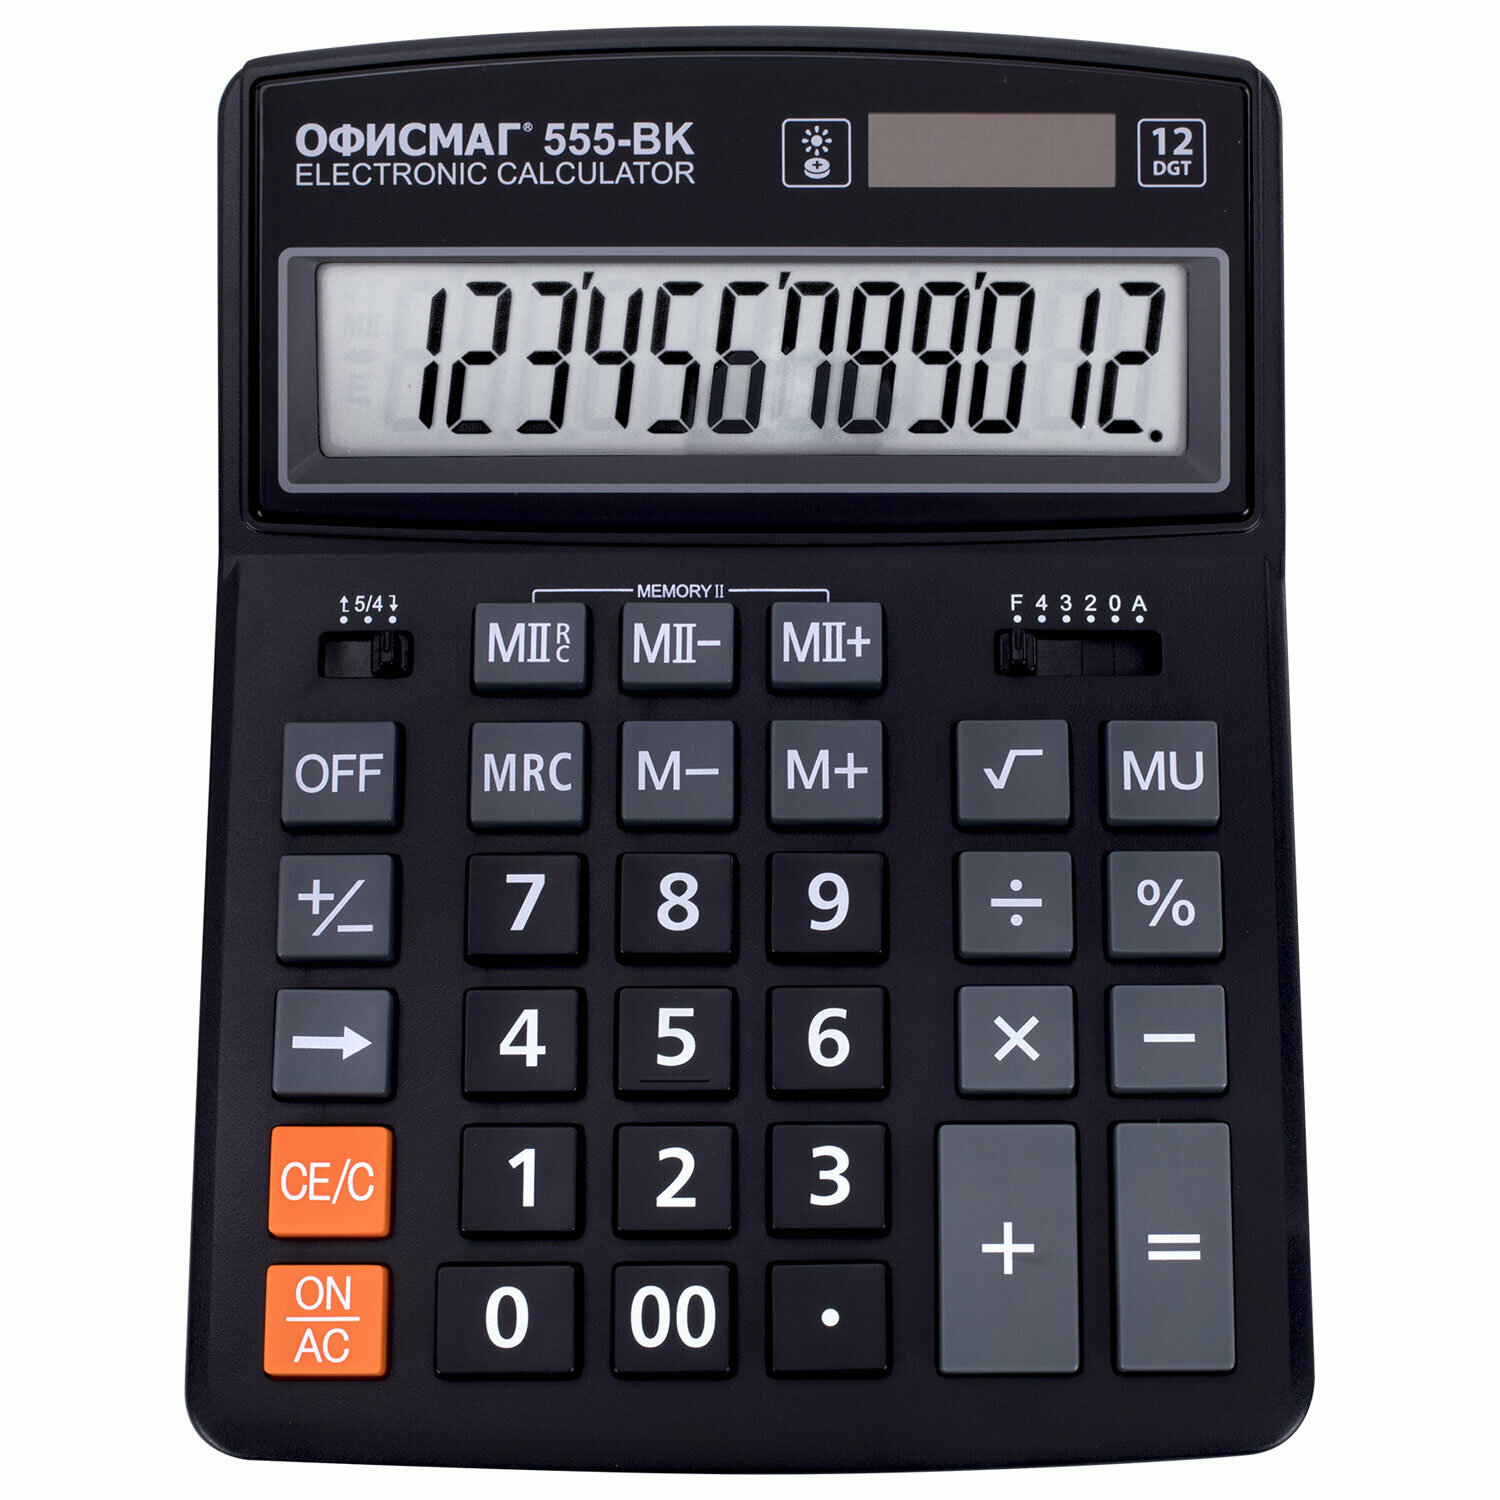 Калькулятор настольный большой 12 разрядный, 206x155 мм, двойное питание, черный, Офисмаг 555-BK, 271729